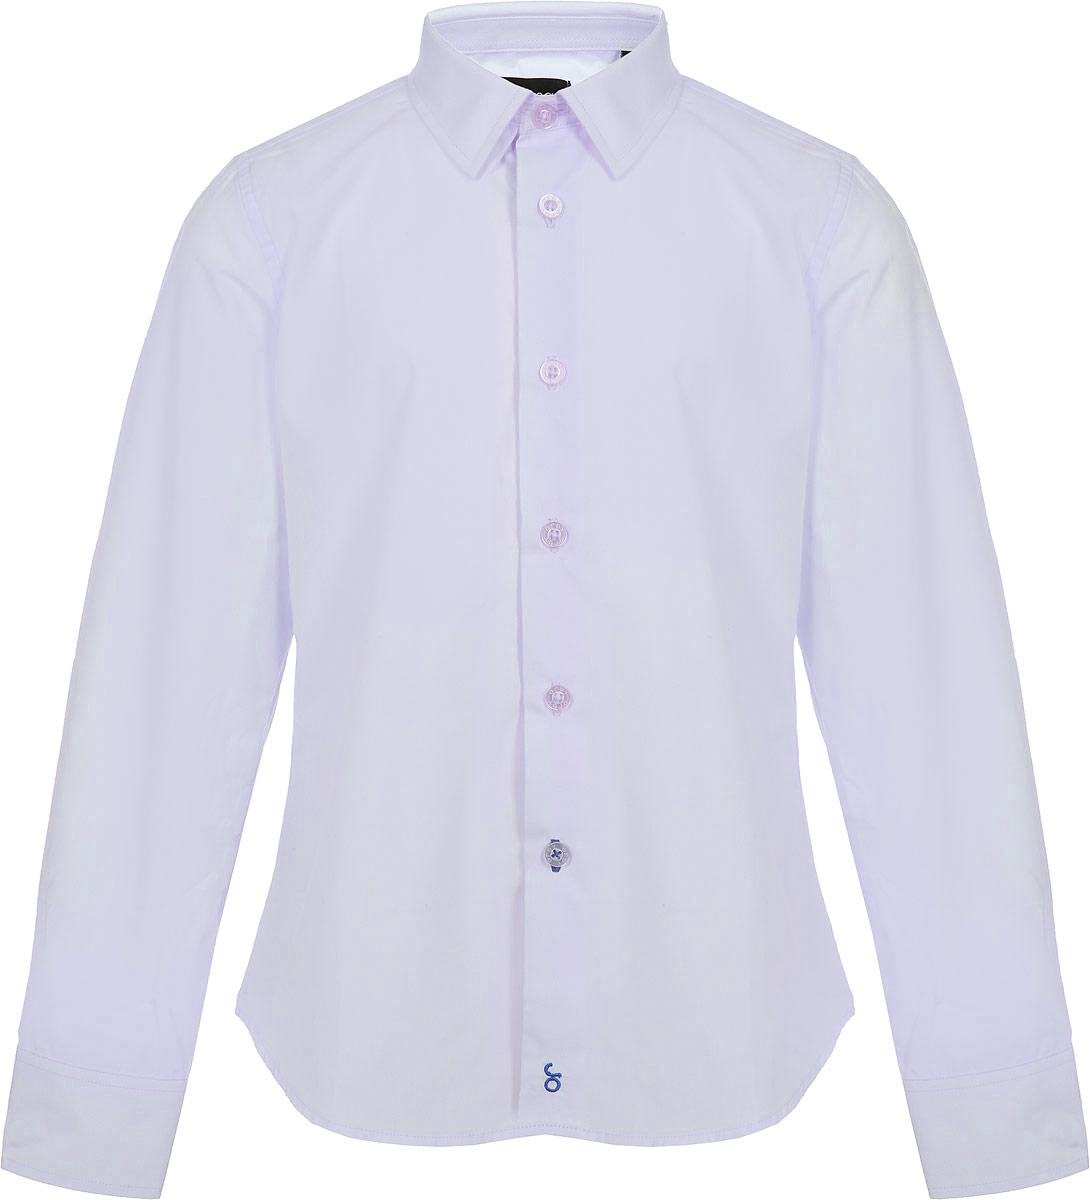 Рубашка для мальчика Orby, цвет: серый. 80453_OLB. Размер 128